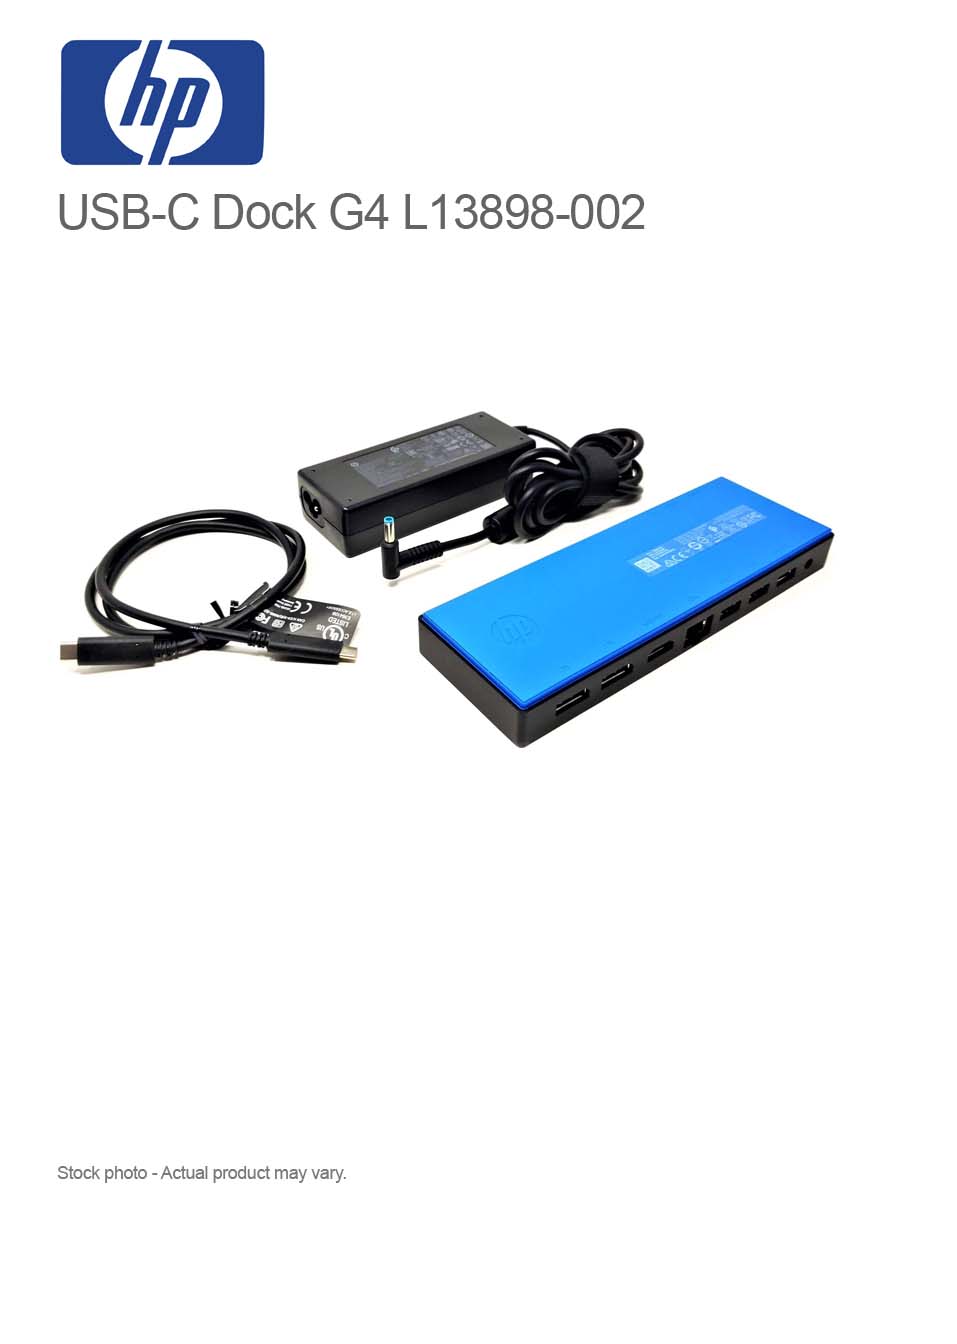 HP USB-C Dock G4 L13898-002 w/ adapter